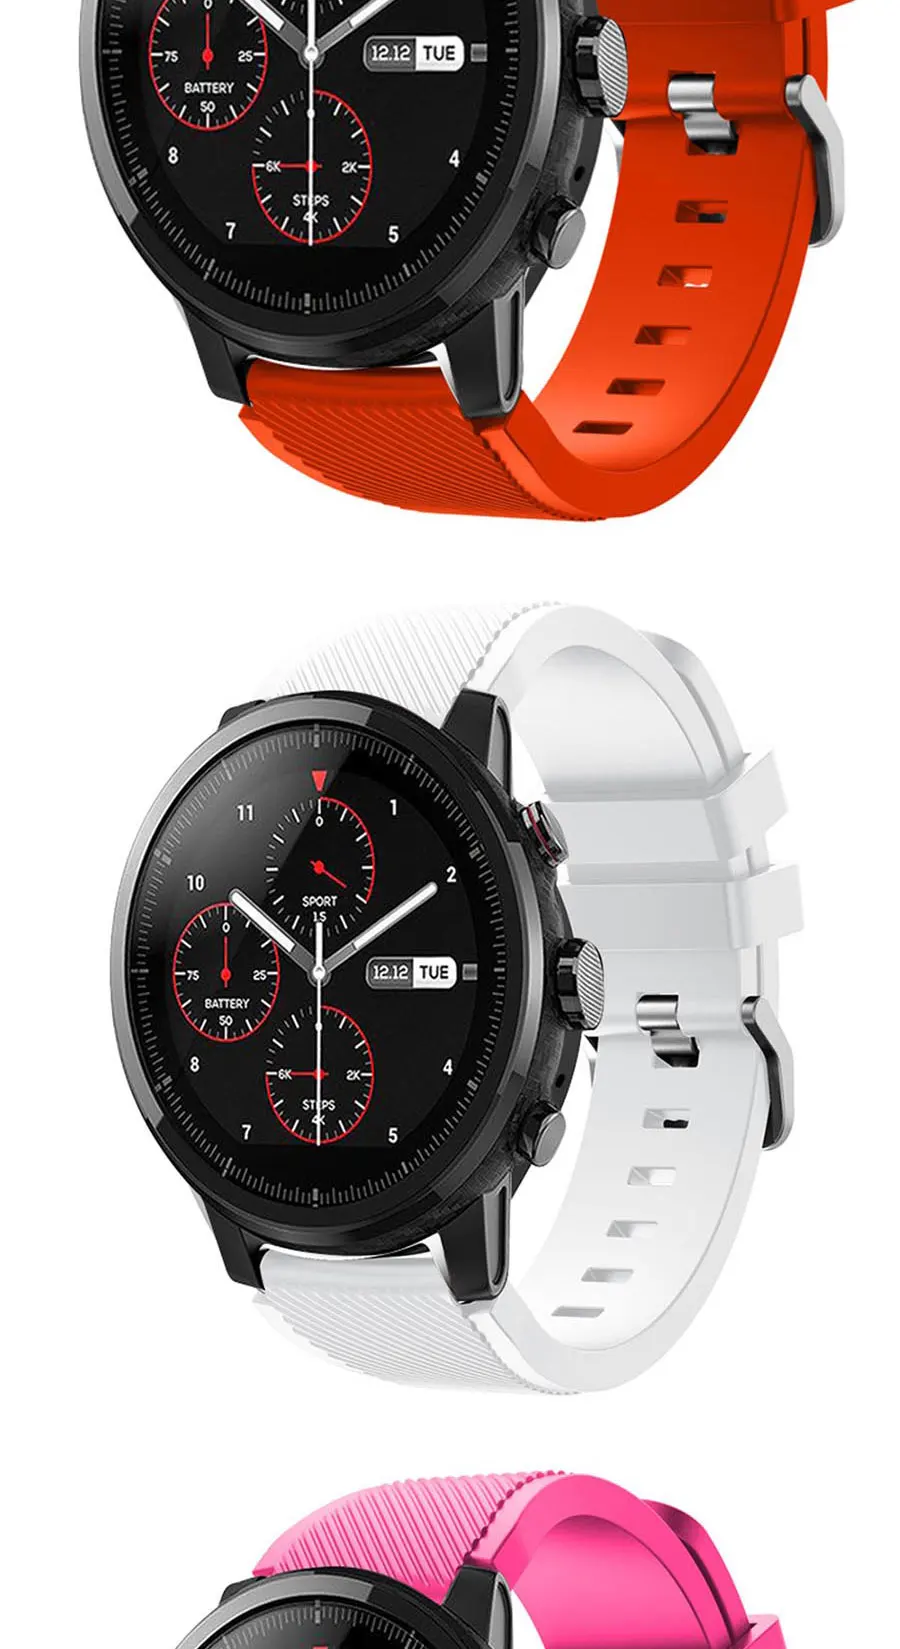 22 мм спортивные часы из мягкого силикагеля ремешок для Huami Amazfit Stratos Смарт-часы для Amazfit Pace Stratos 2/2S ремешки Браслет